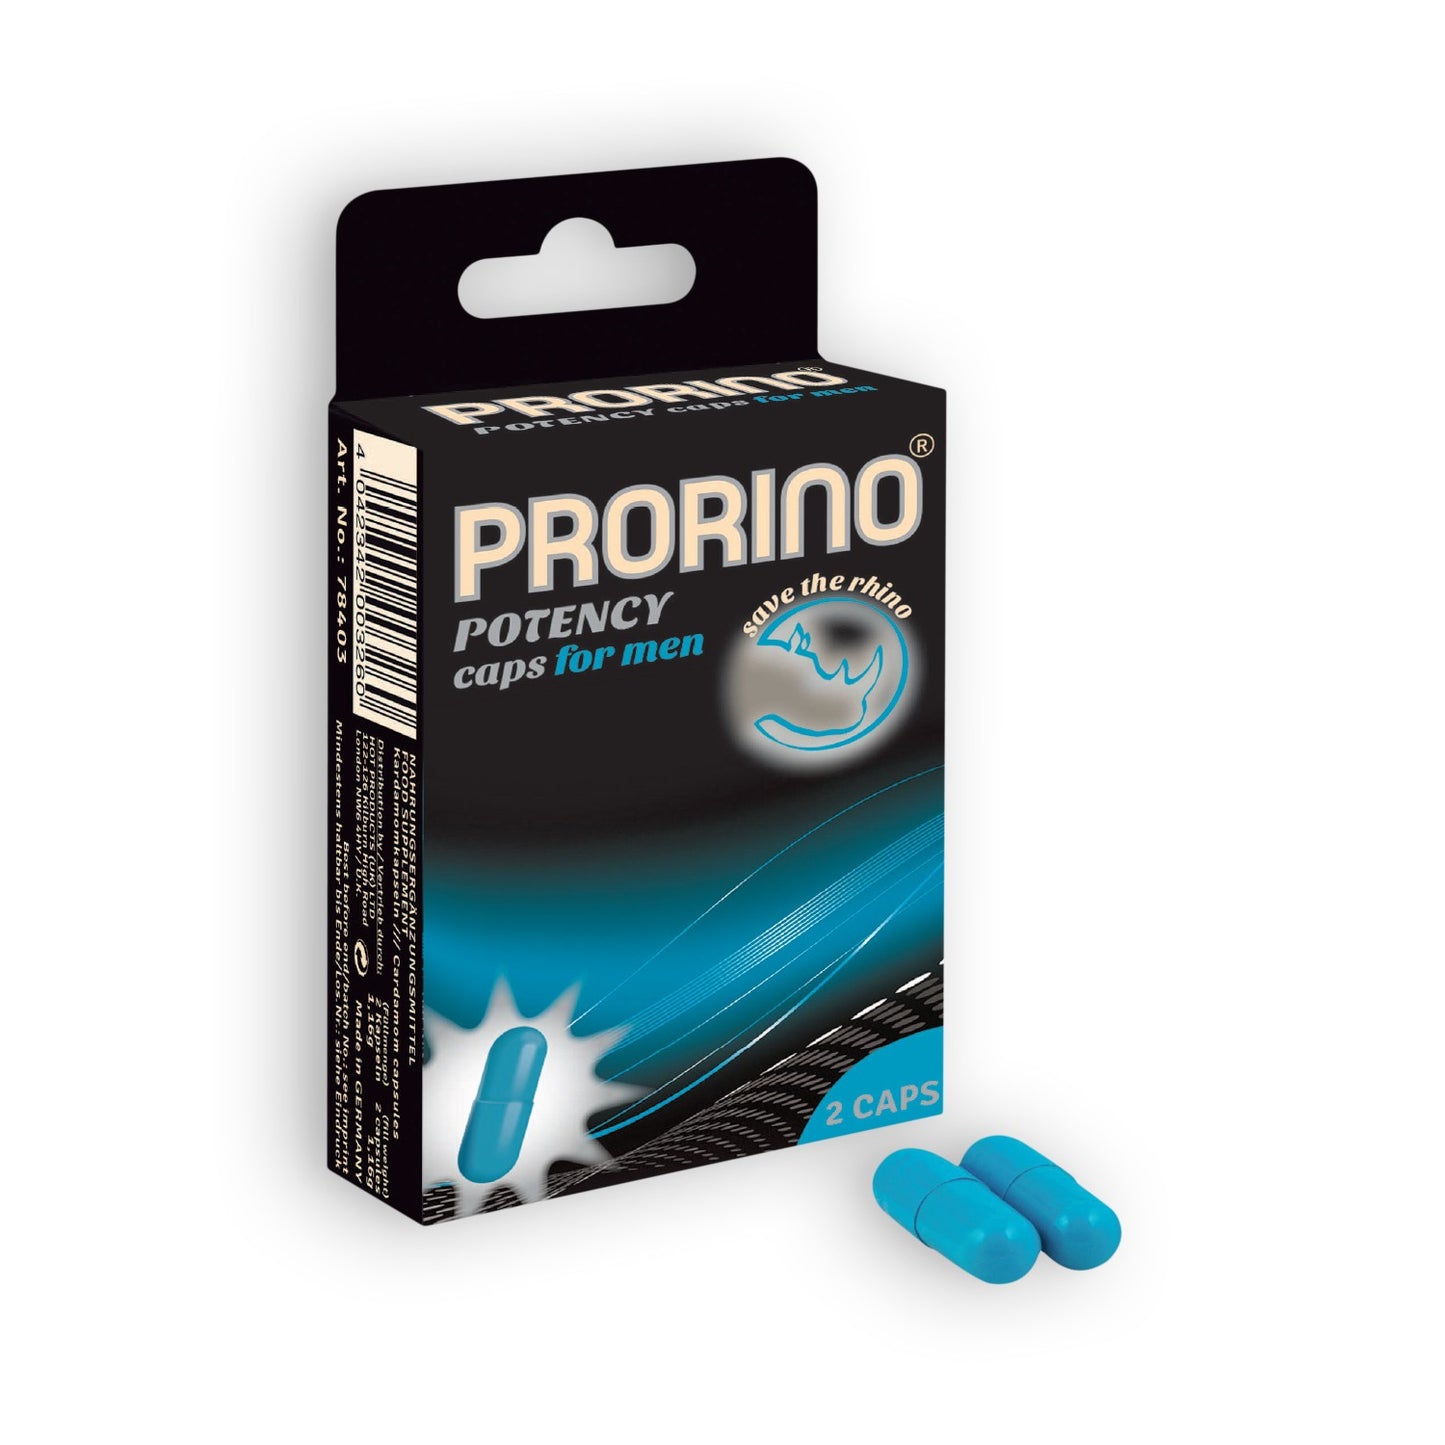 Prorino Potency caps for men